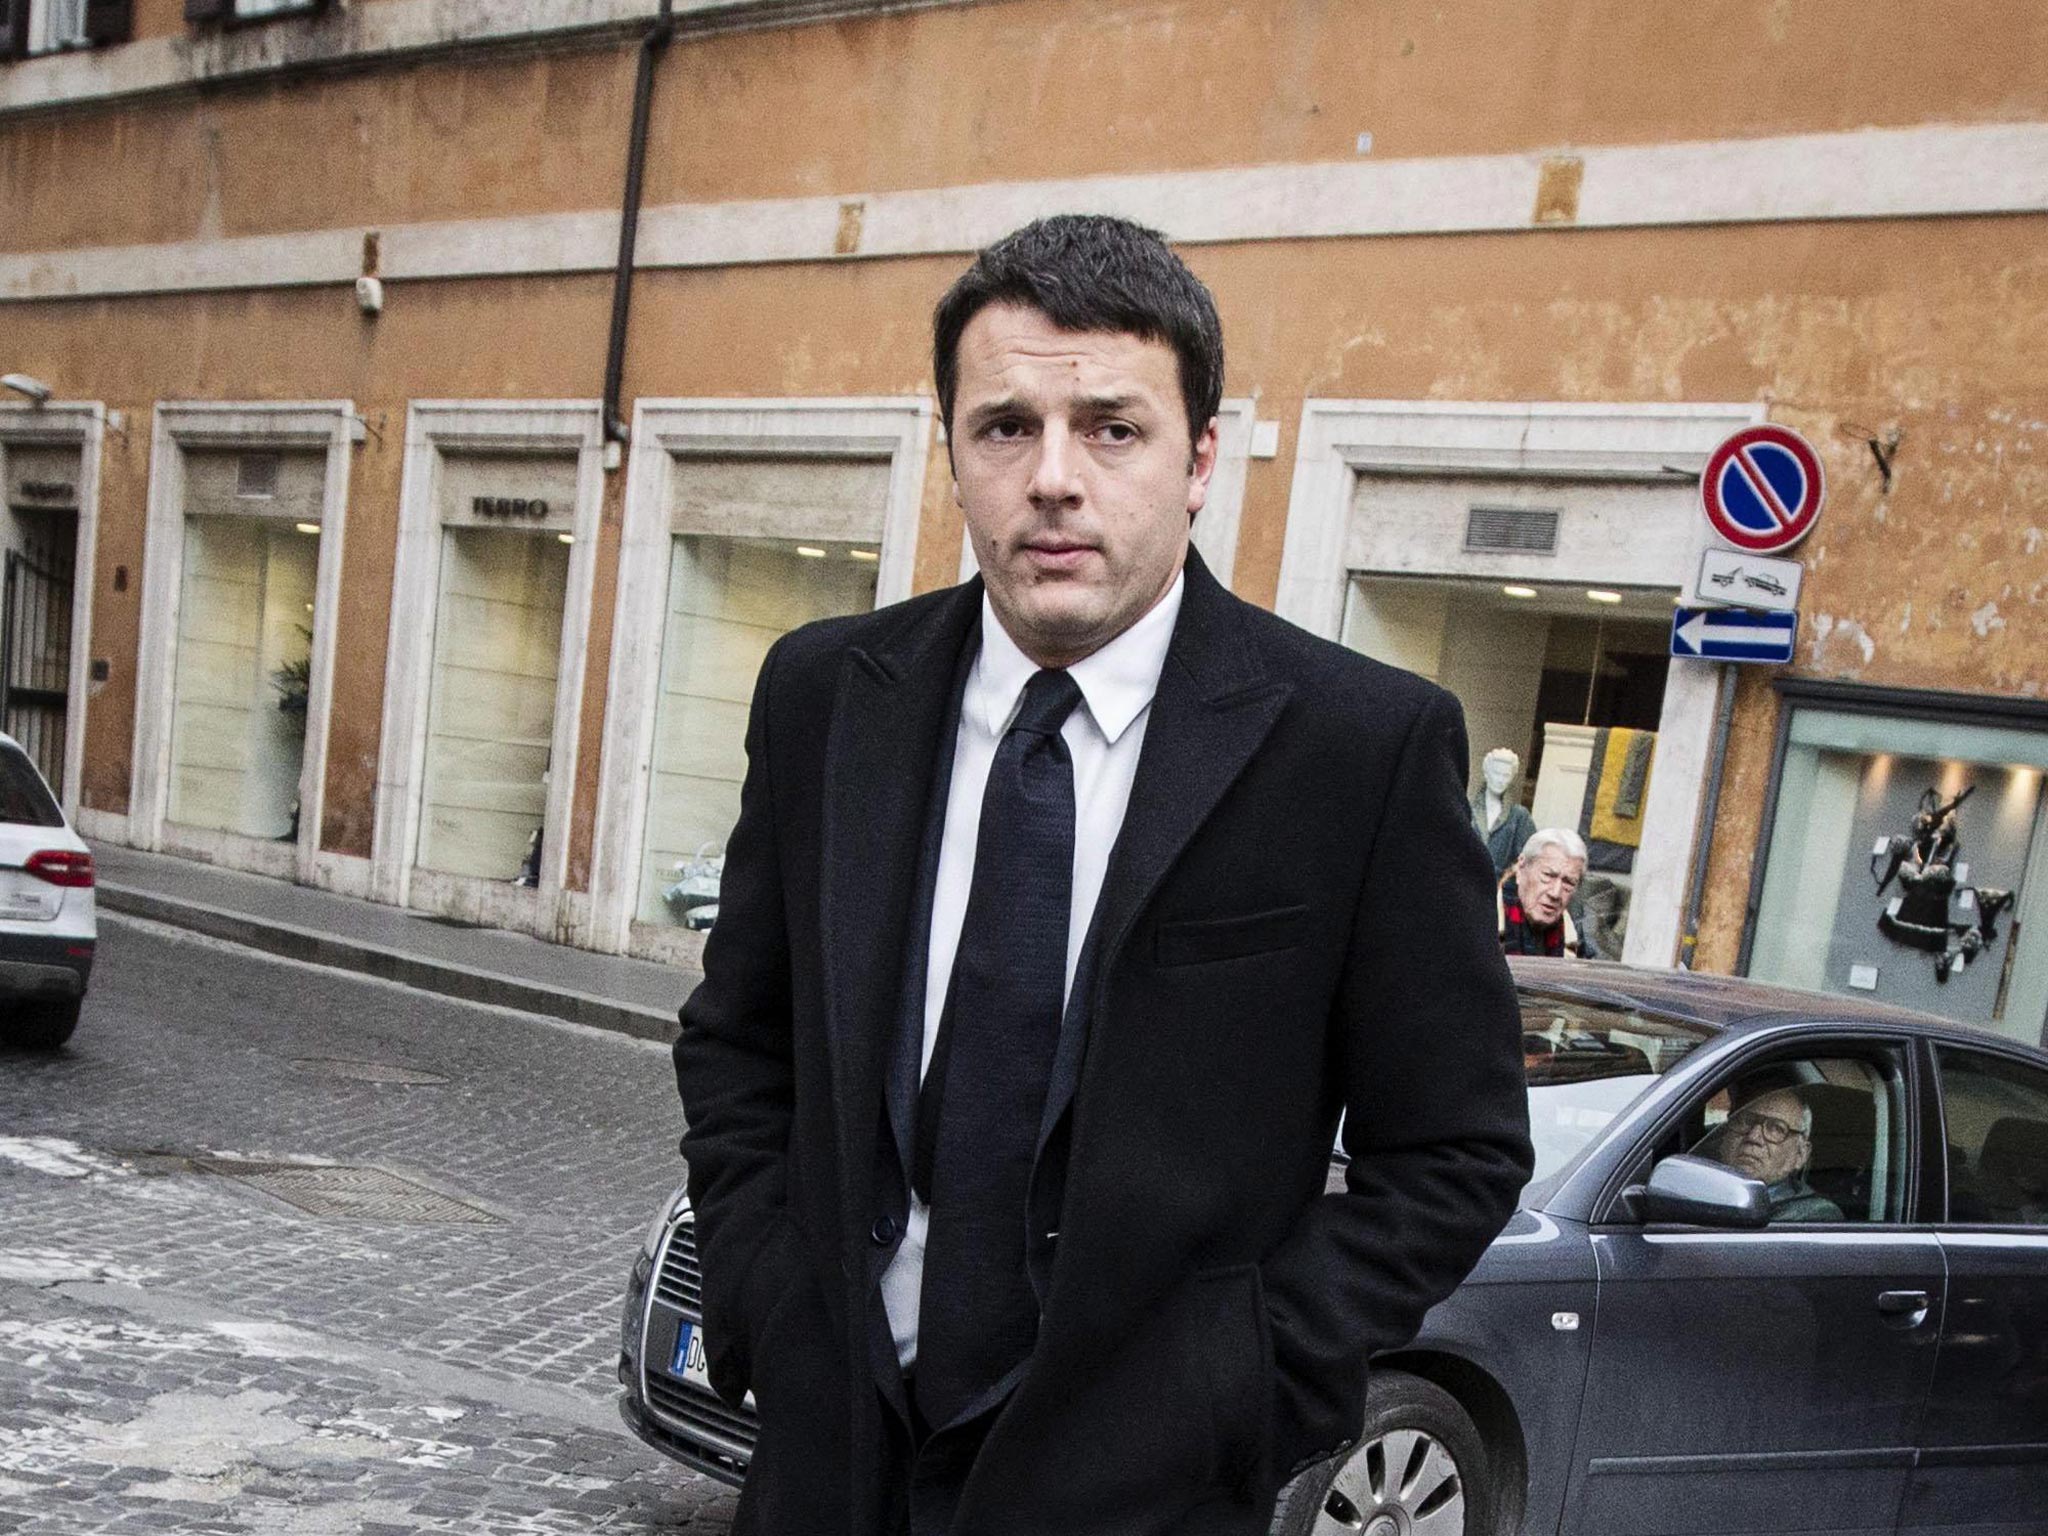 Matteo Renzi must tackle a weak economy as premier